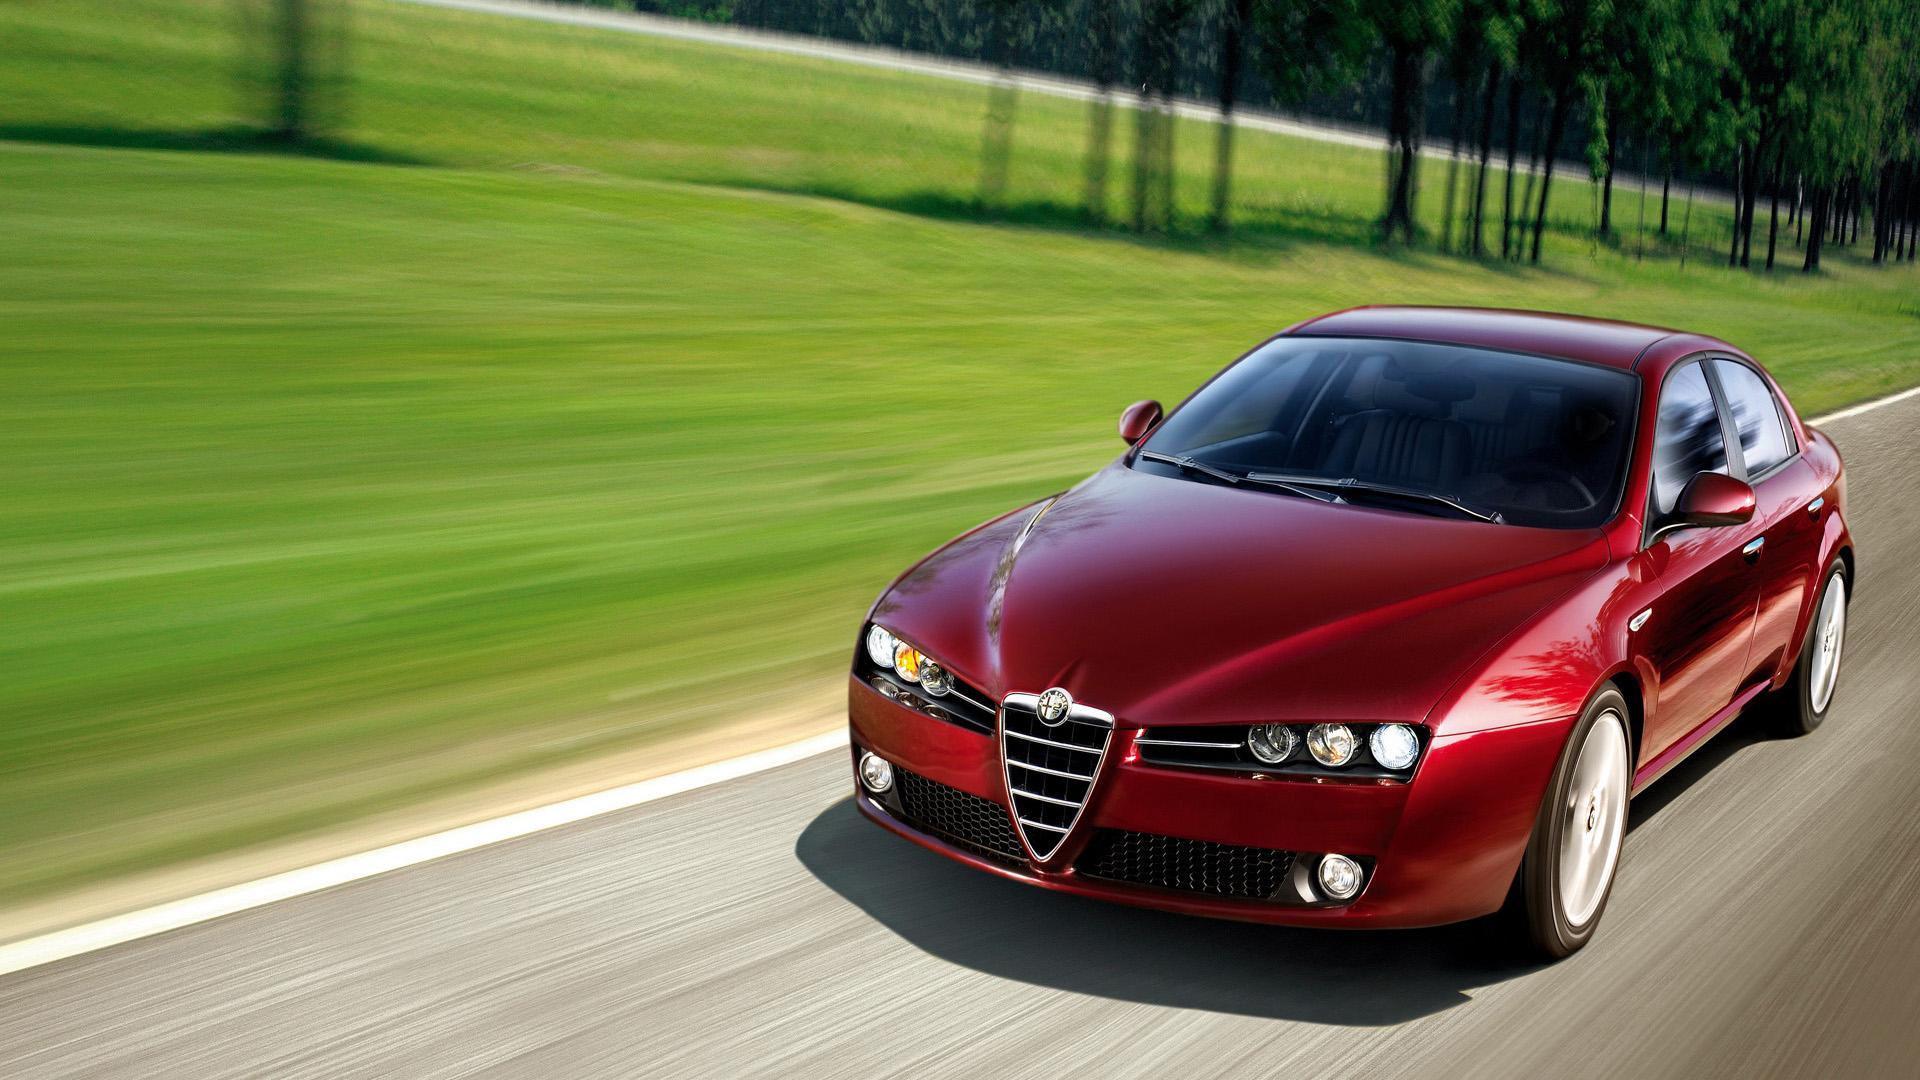 Alfa Romeo 159 Wallpaper & HD Image